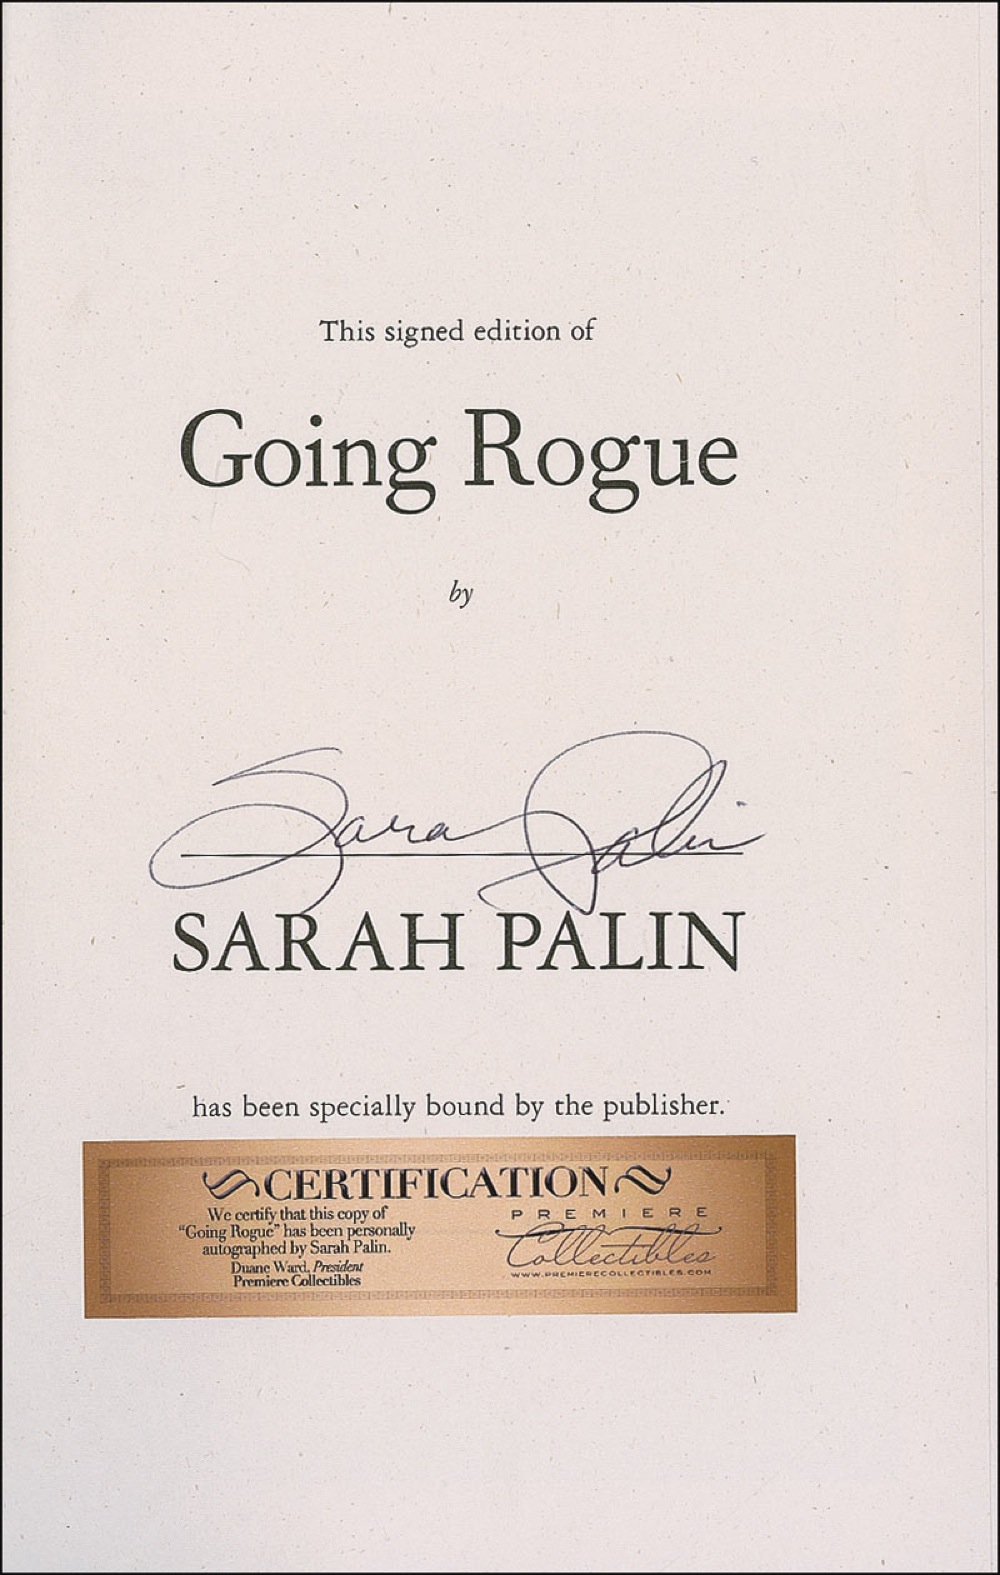 Lot #344 Sarah Palin